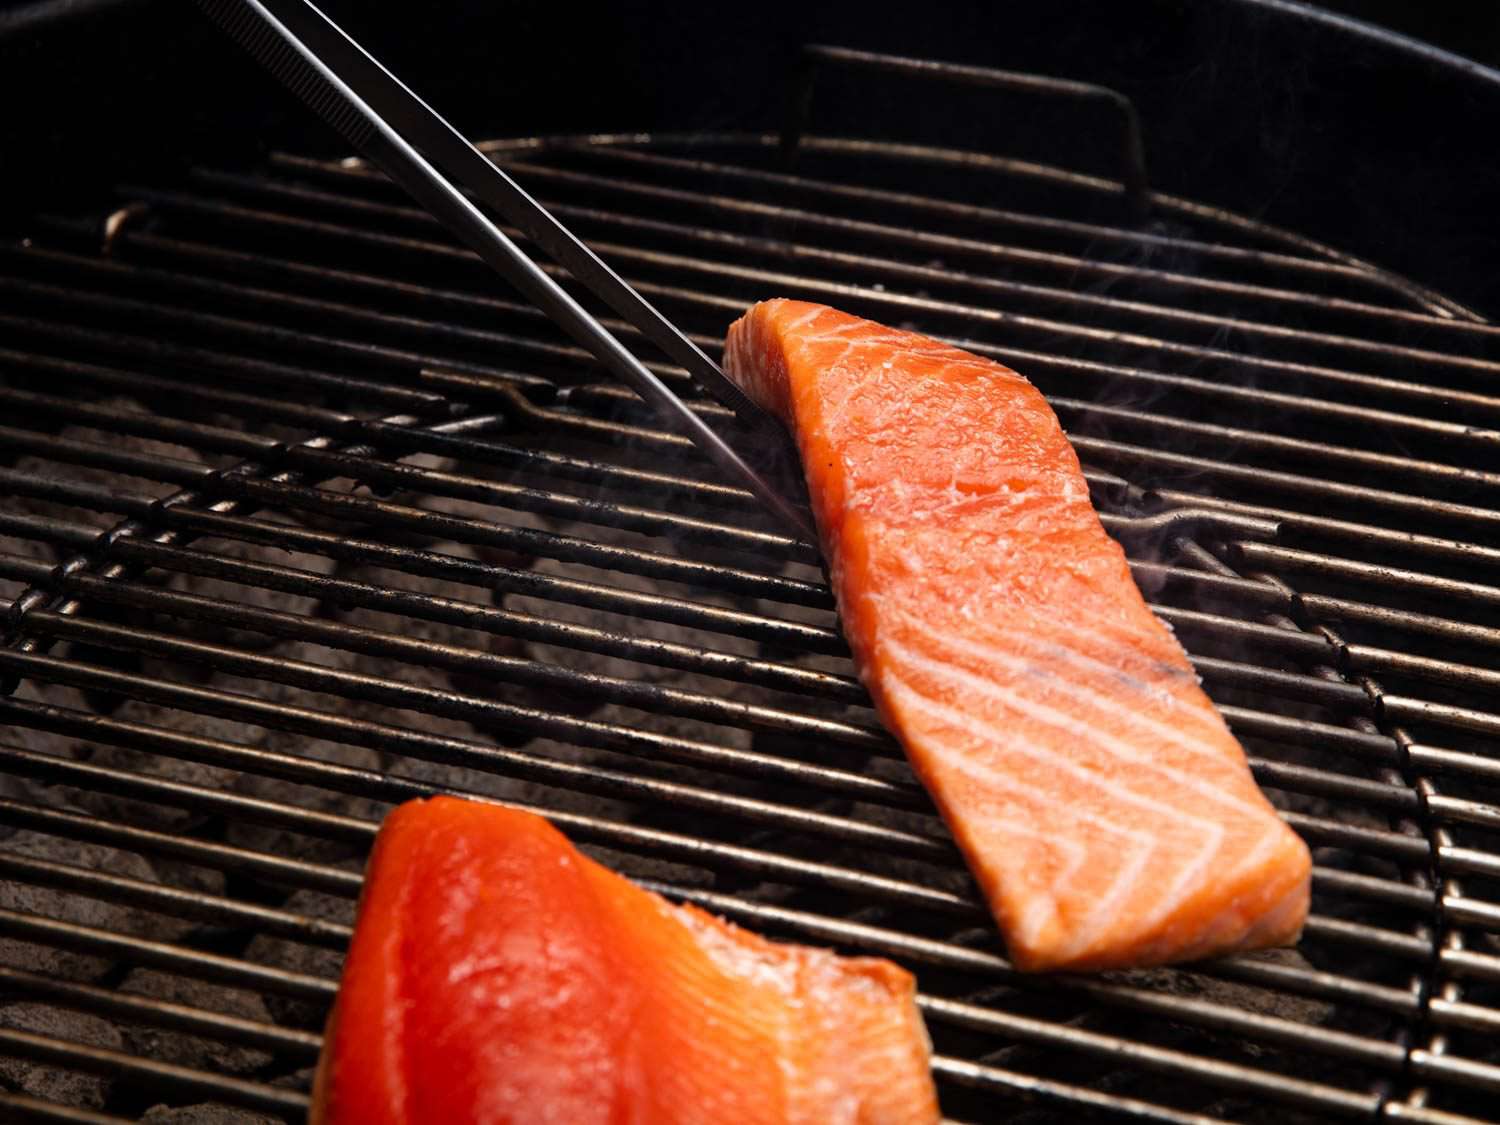 用烹饪用的镊子从下面夹起一片三文鱼，把它放到烤架上。